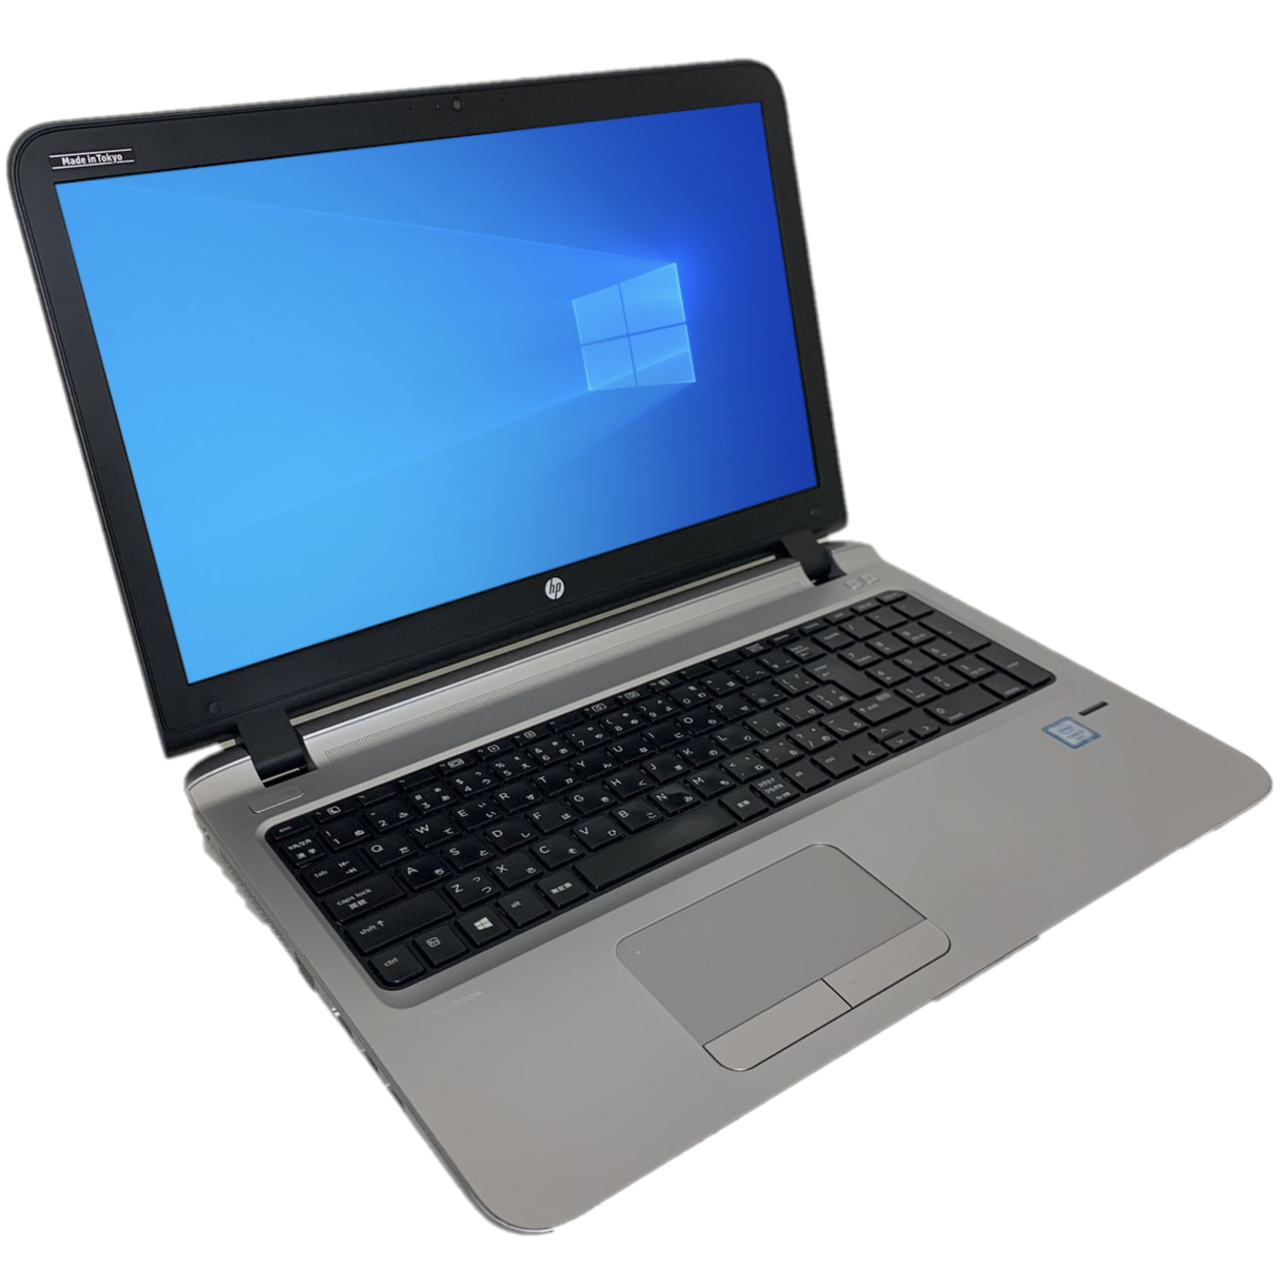 HP ProBook 450 G3 i5-6200U メモリ8GB SSD256GB カメラあり [Cランク] bluetooth 15.6インチ ノートパソコン 中古パソコン専門店 PCスマイル